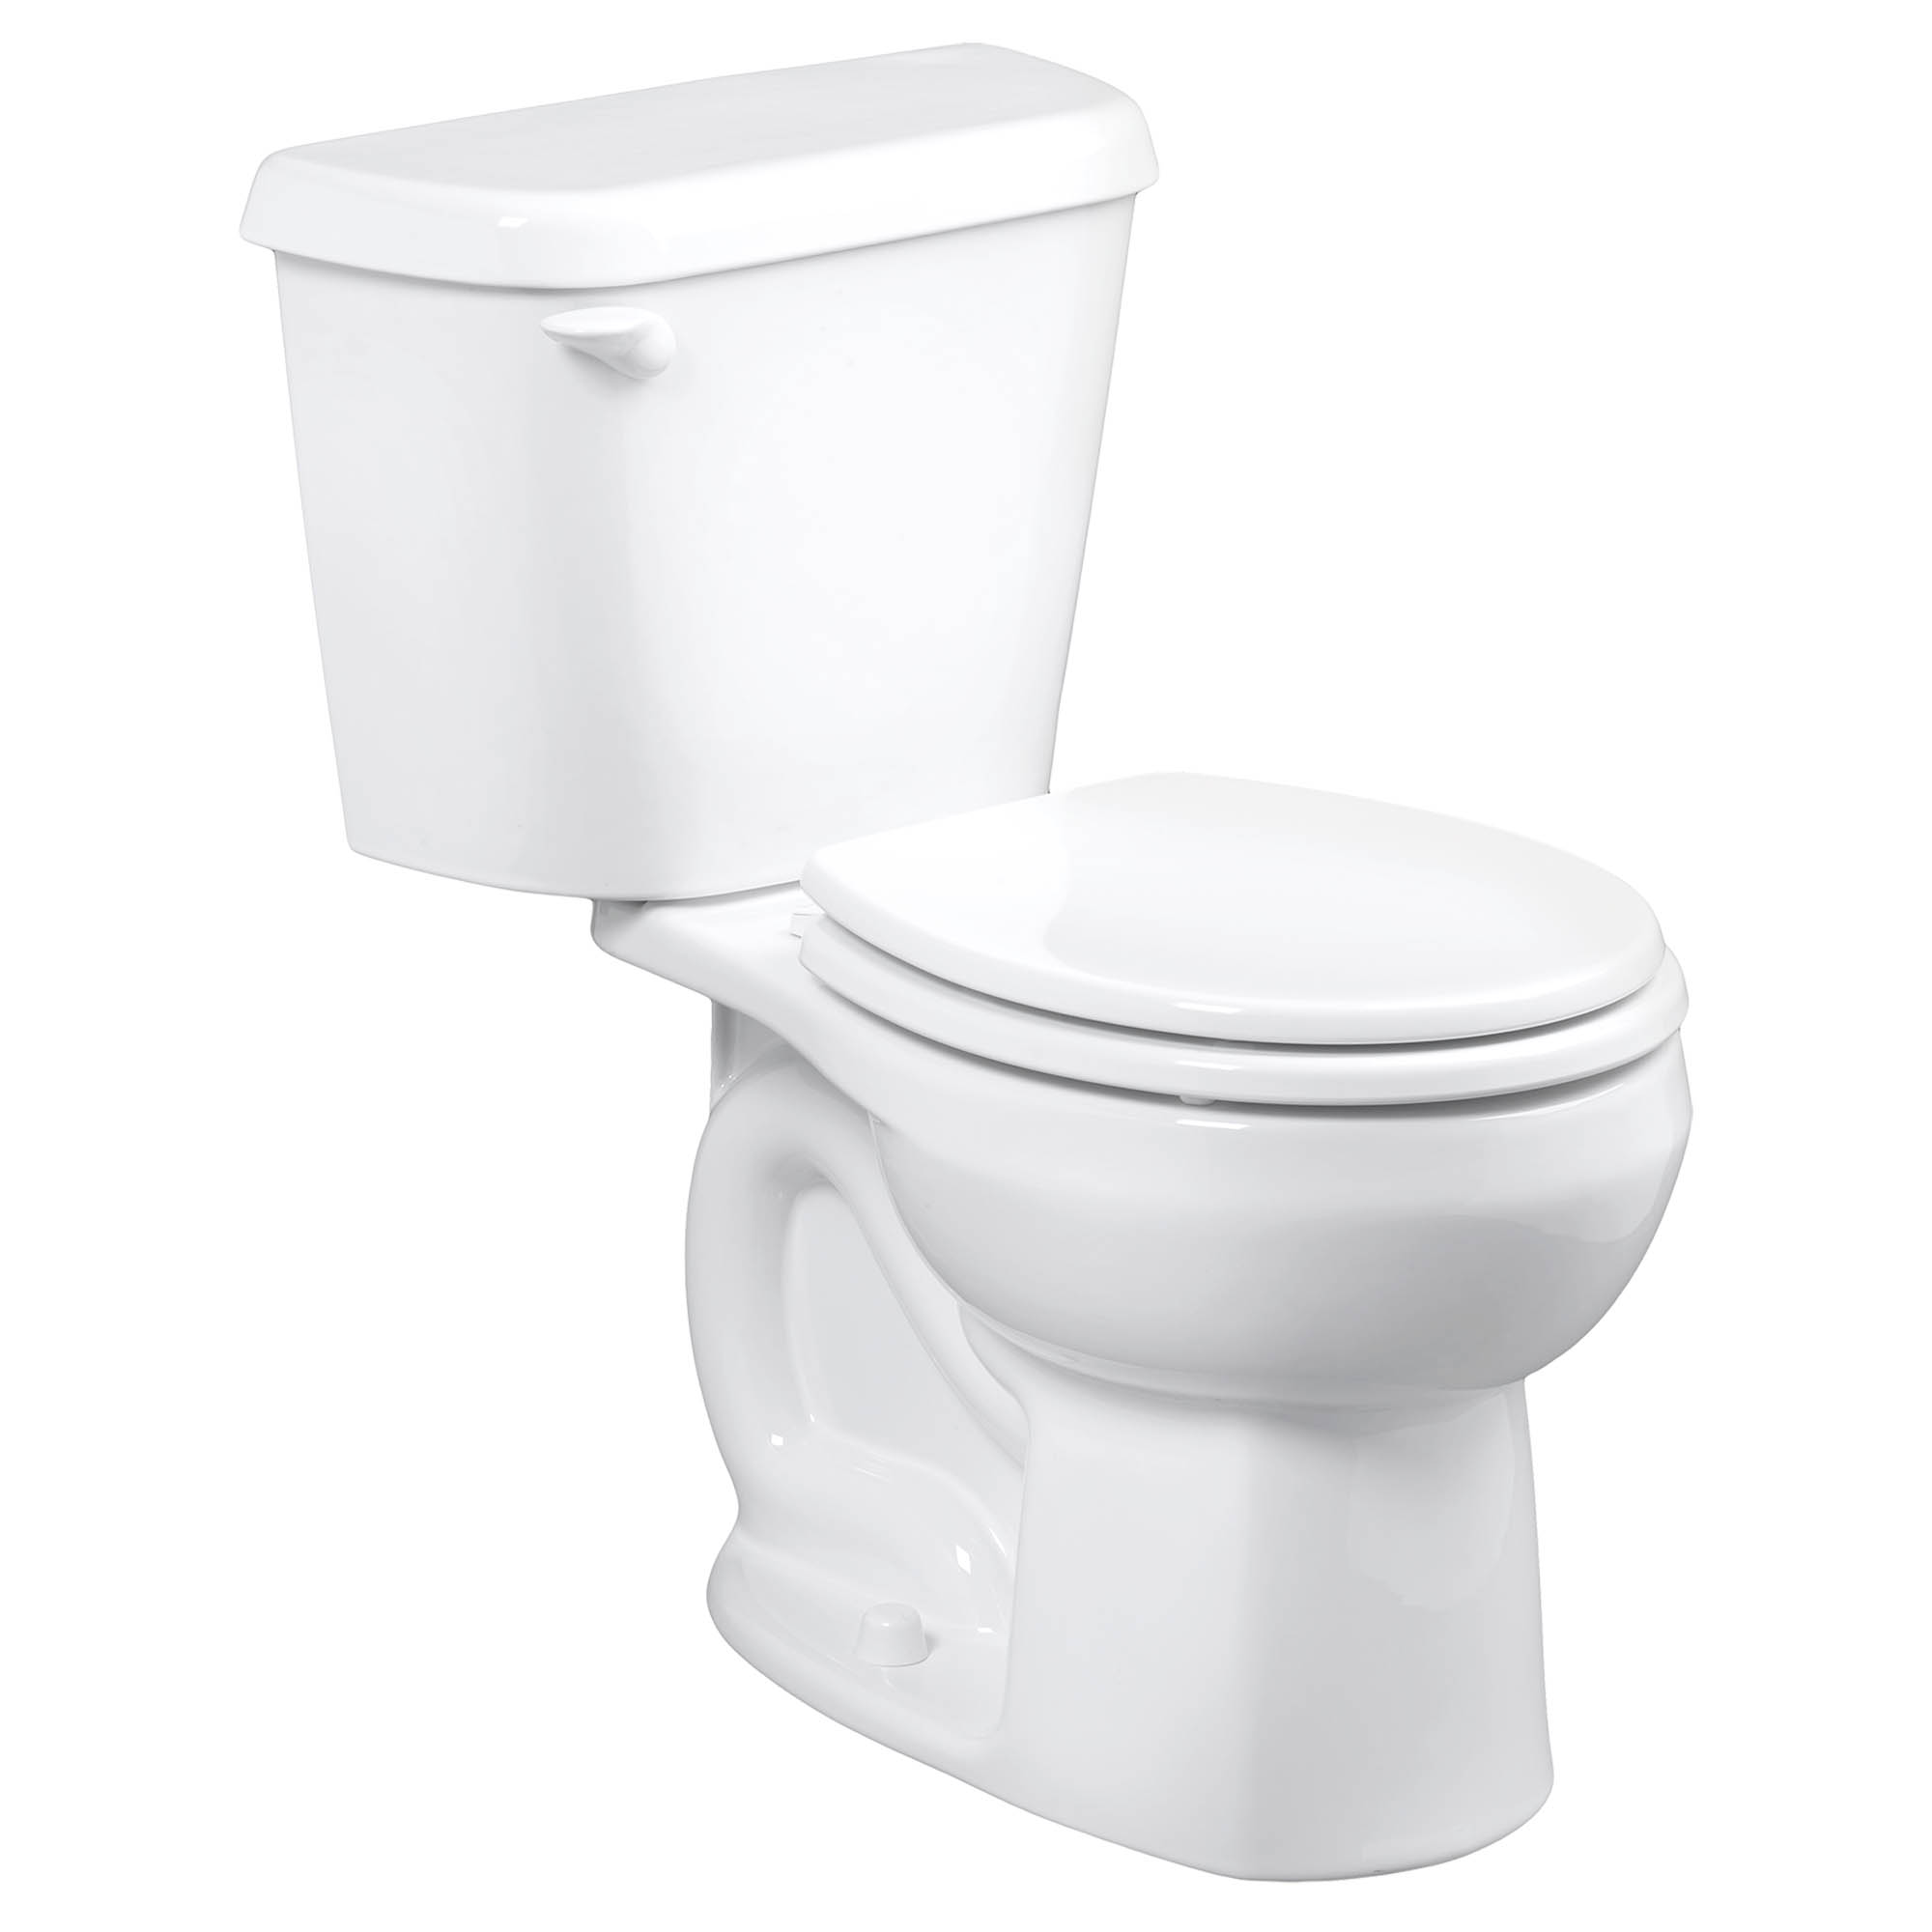 Toilette Colony, 2 pièces, 1,28 gpc/4,8 lpc, à cuvette au devant rond à hauteur régulière, à encastrer 10 po, sans siège